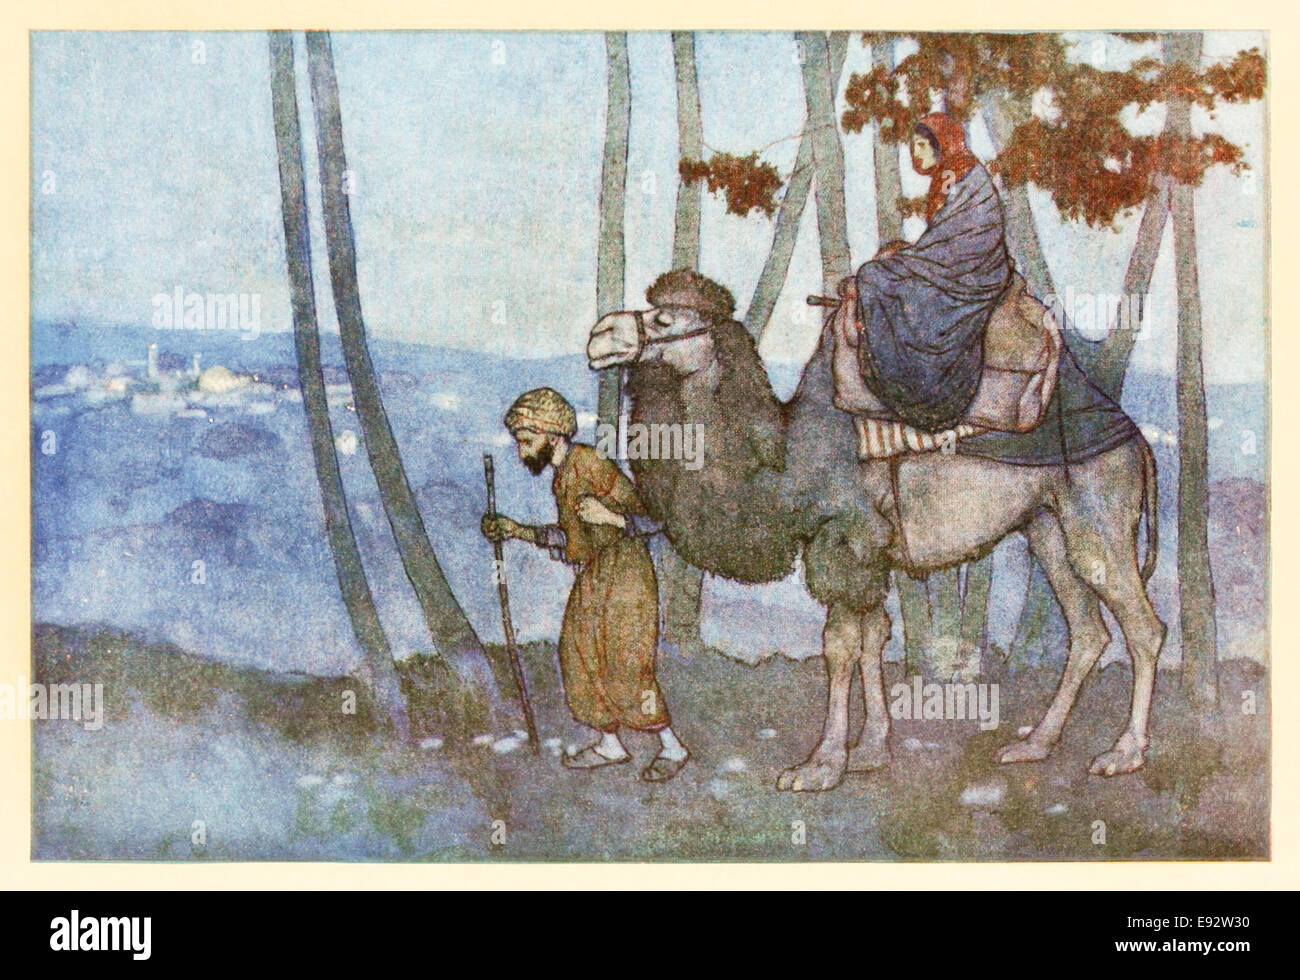 Princesse de Deryabar arrive à la ville d'Harran - Edmund Dulac illustration de 'l'histoire de la princesse de Deryabar' dans 'Stories de l'Arabian Nights'. Voir la description pour plus d'informations Banque D'Images